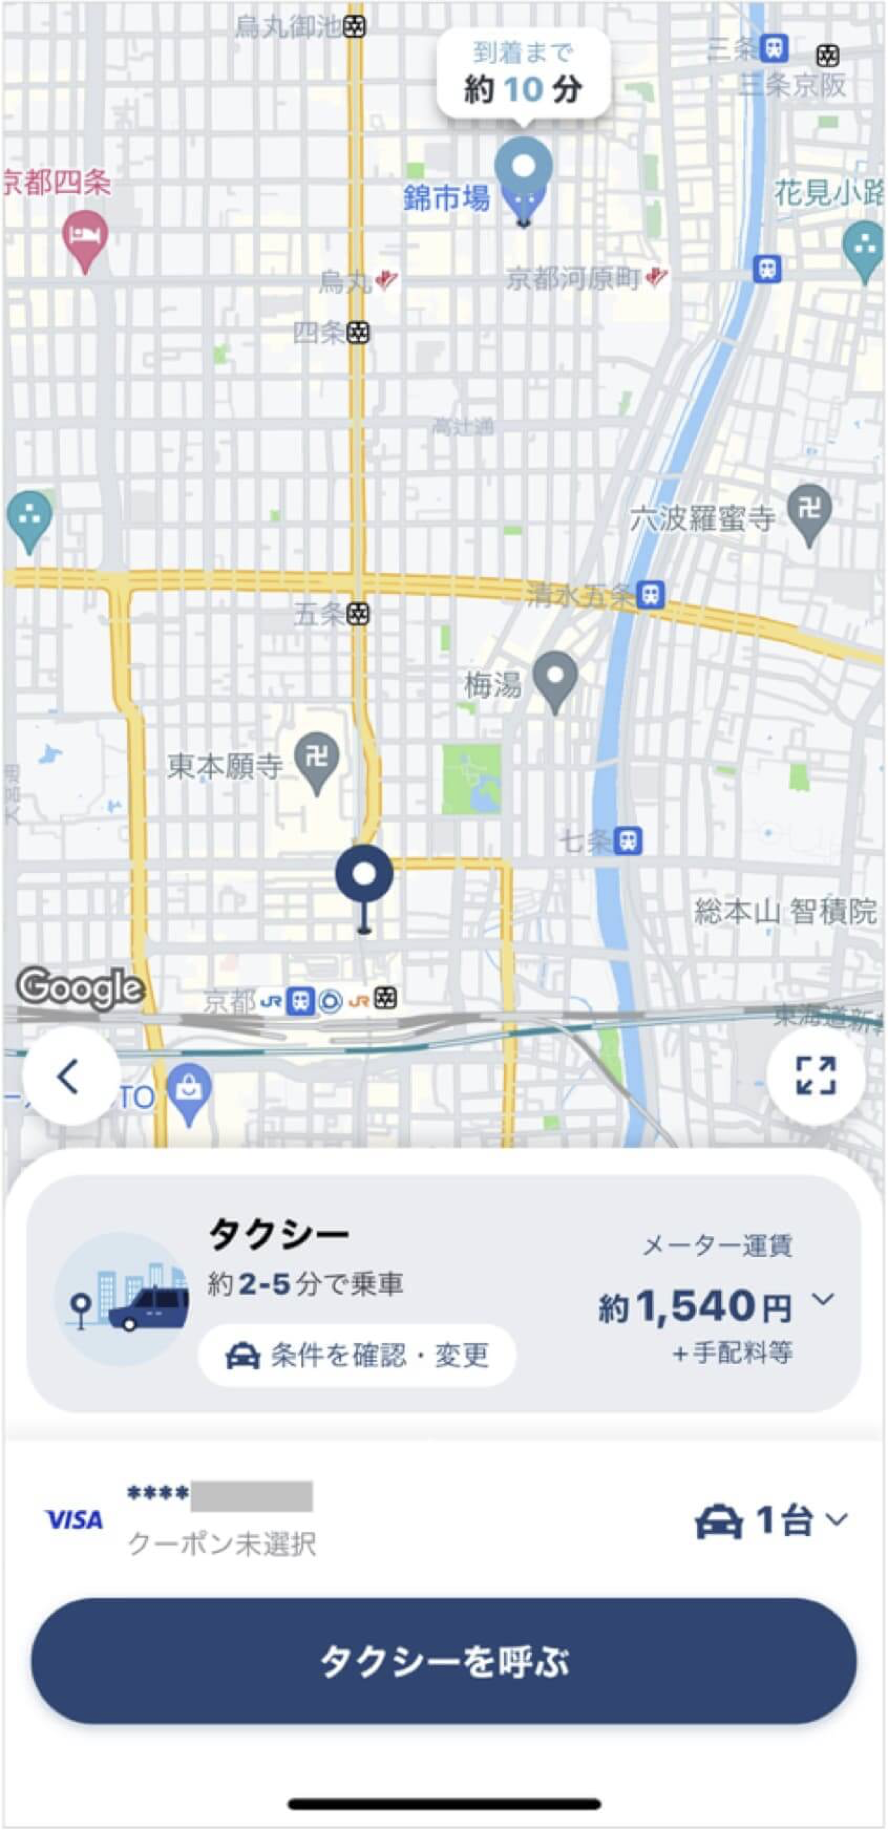 京都駅から錦市場までのタクシー料金・所要時間まとめ